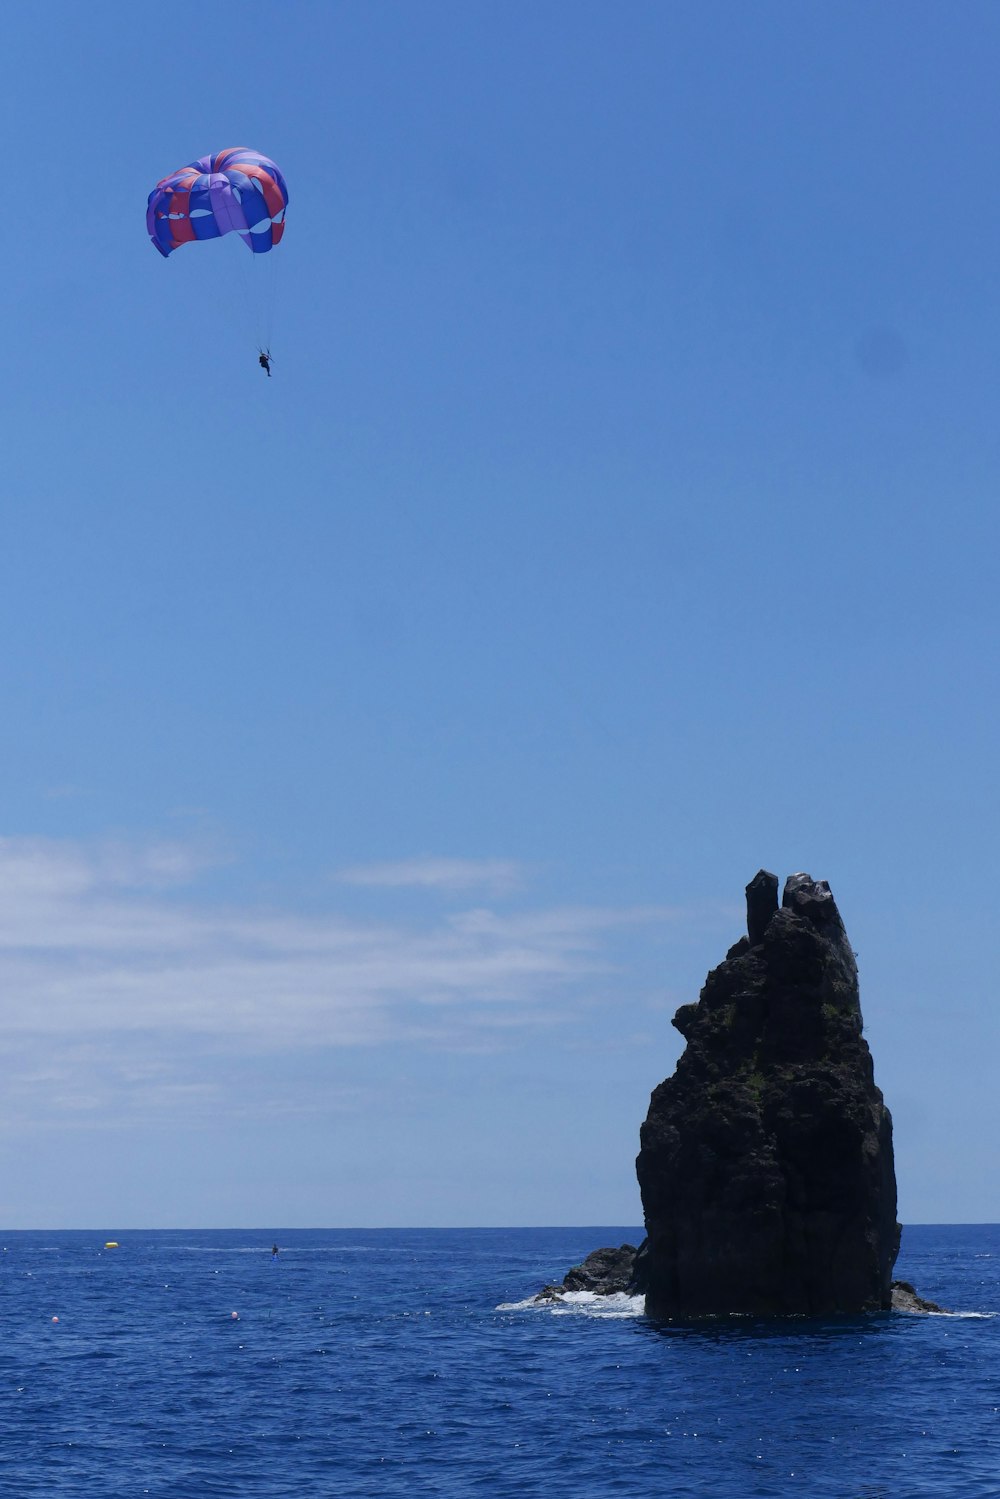 une personne parachute ascensionnel sur un rocher dans l’eau